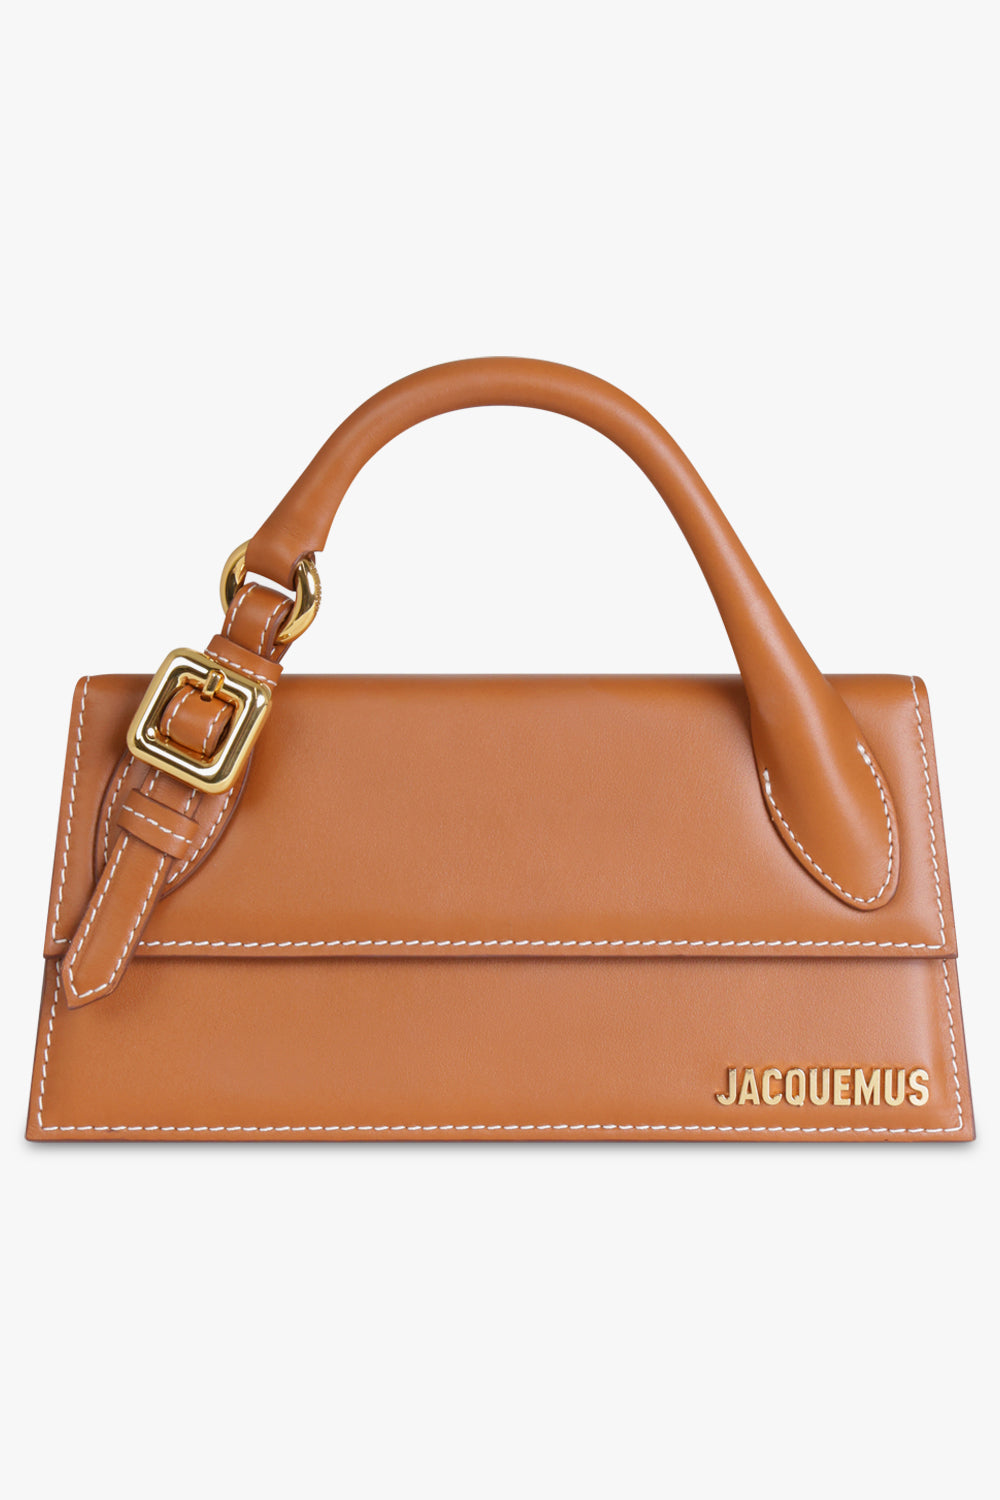 Jacquemus Le Chiquito Long Suede Shoulder Bag - Farfetch